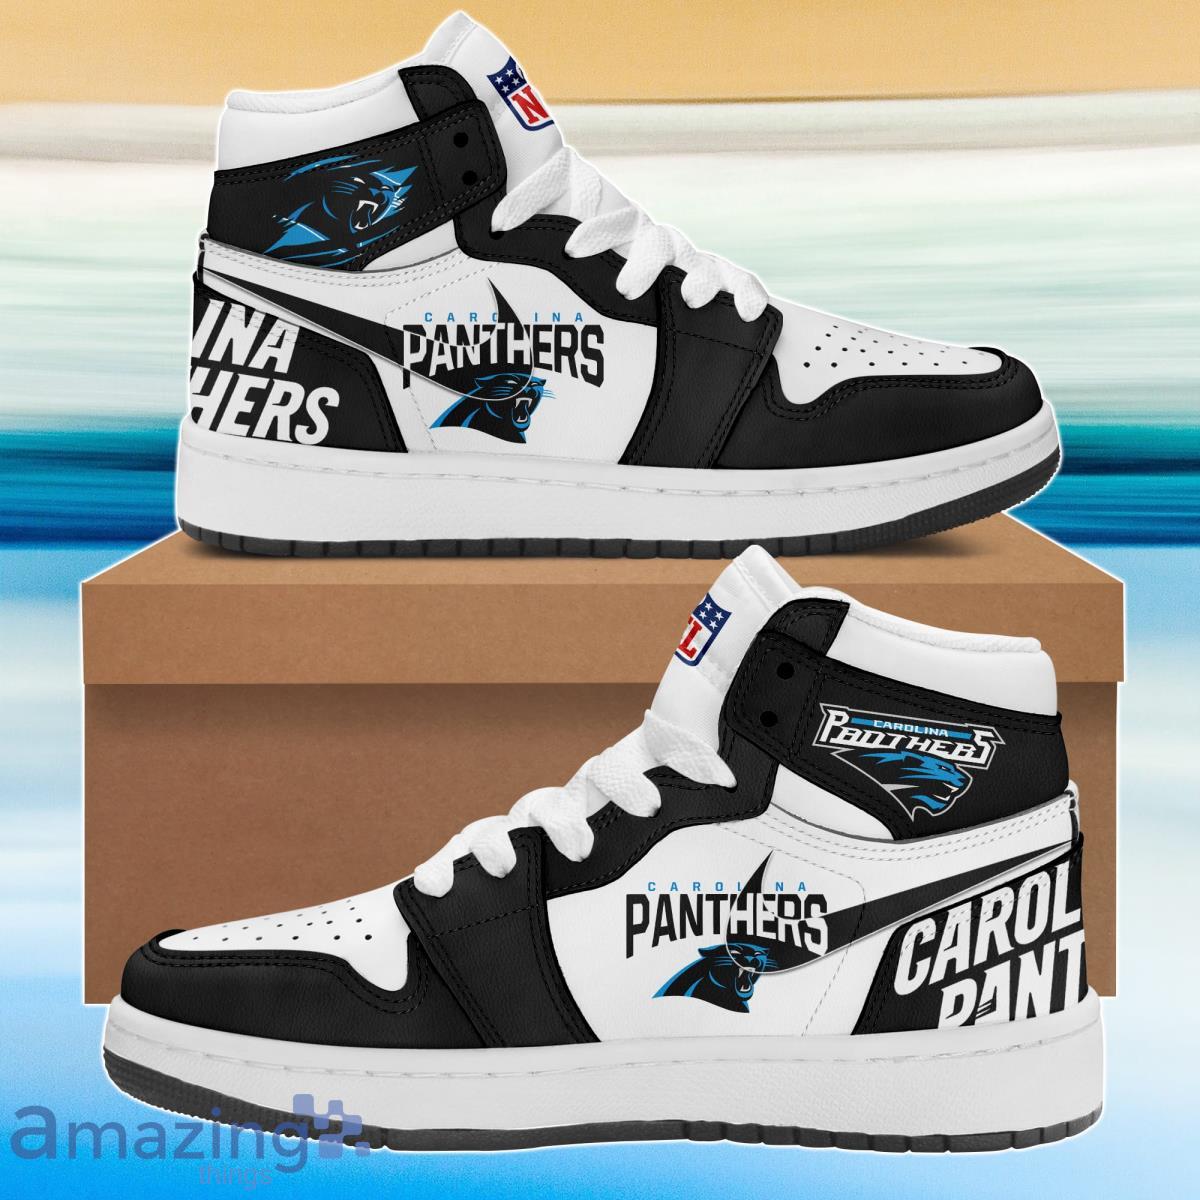 Carolina Panthers Air Jordan Hightop Shoes